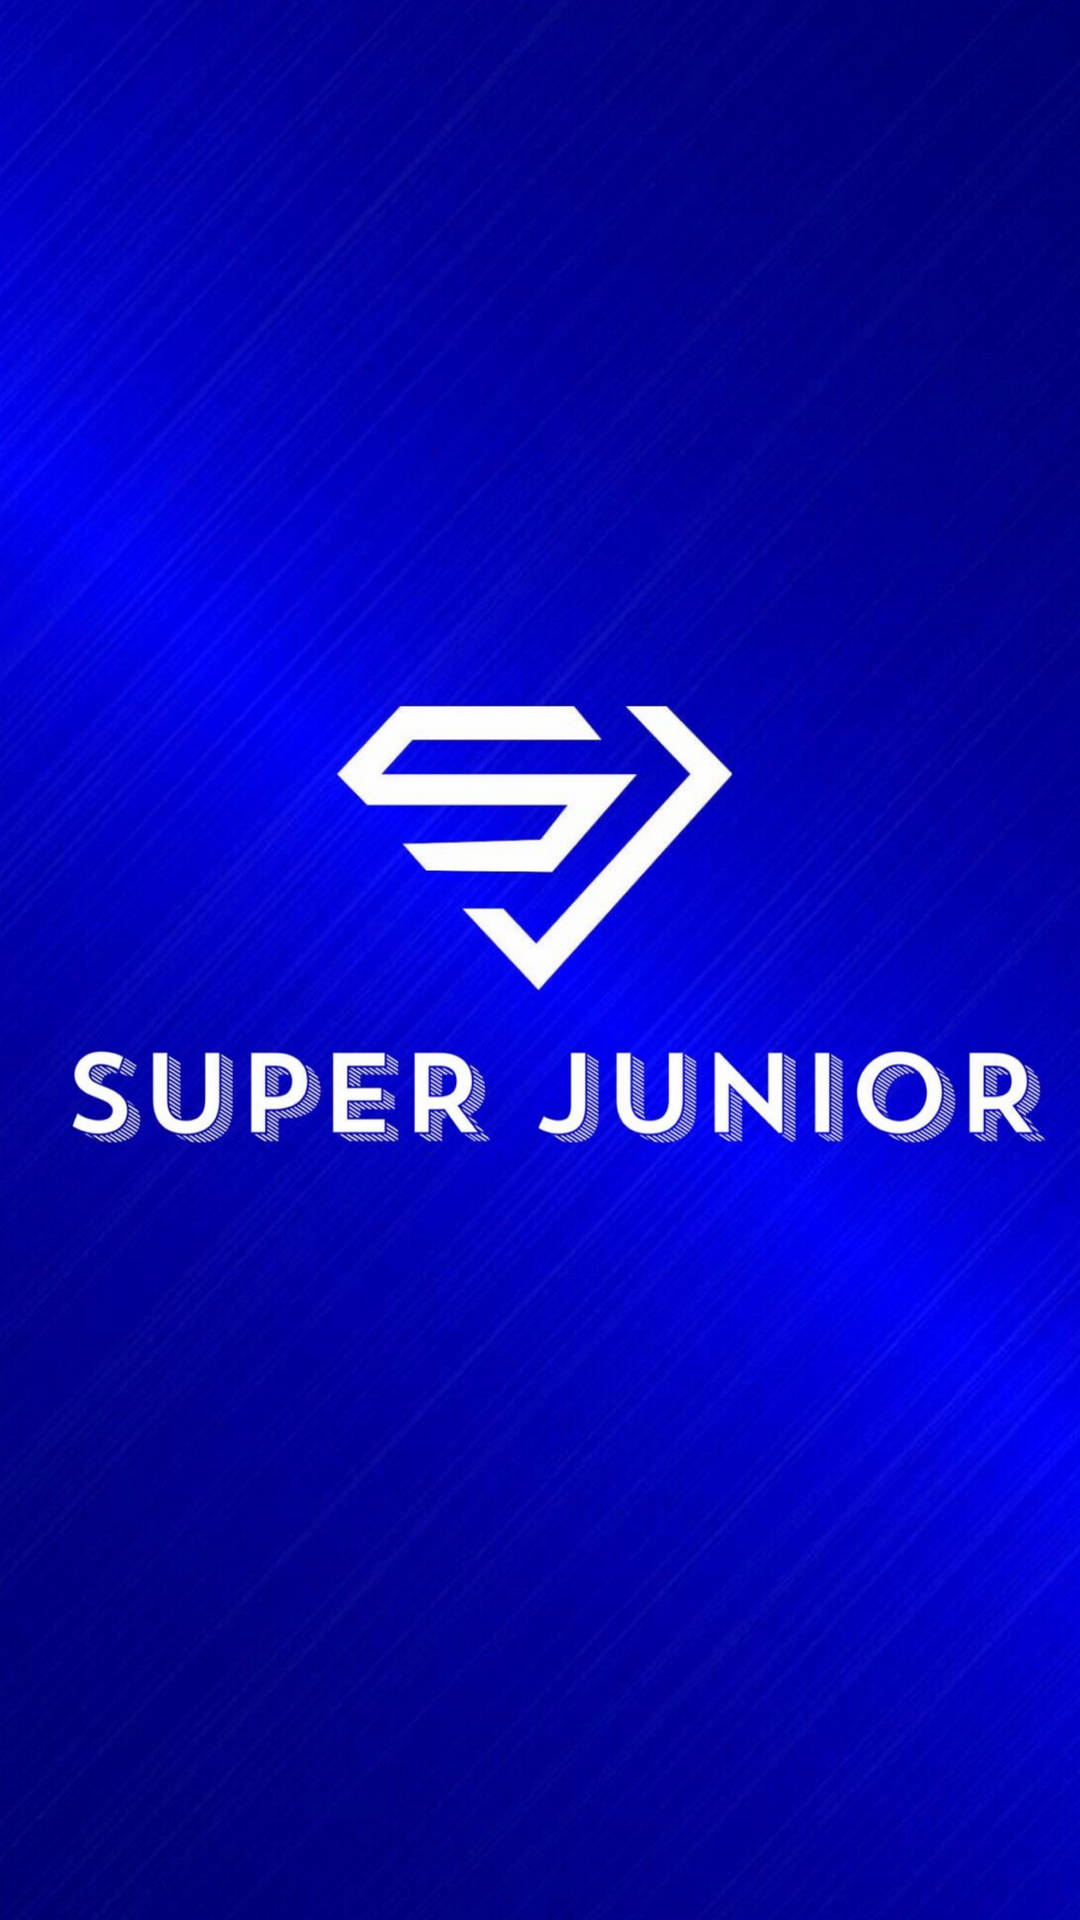 Superjunior Enkel Logotyp Wallpaper